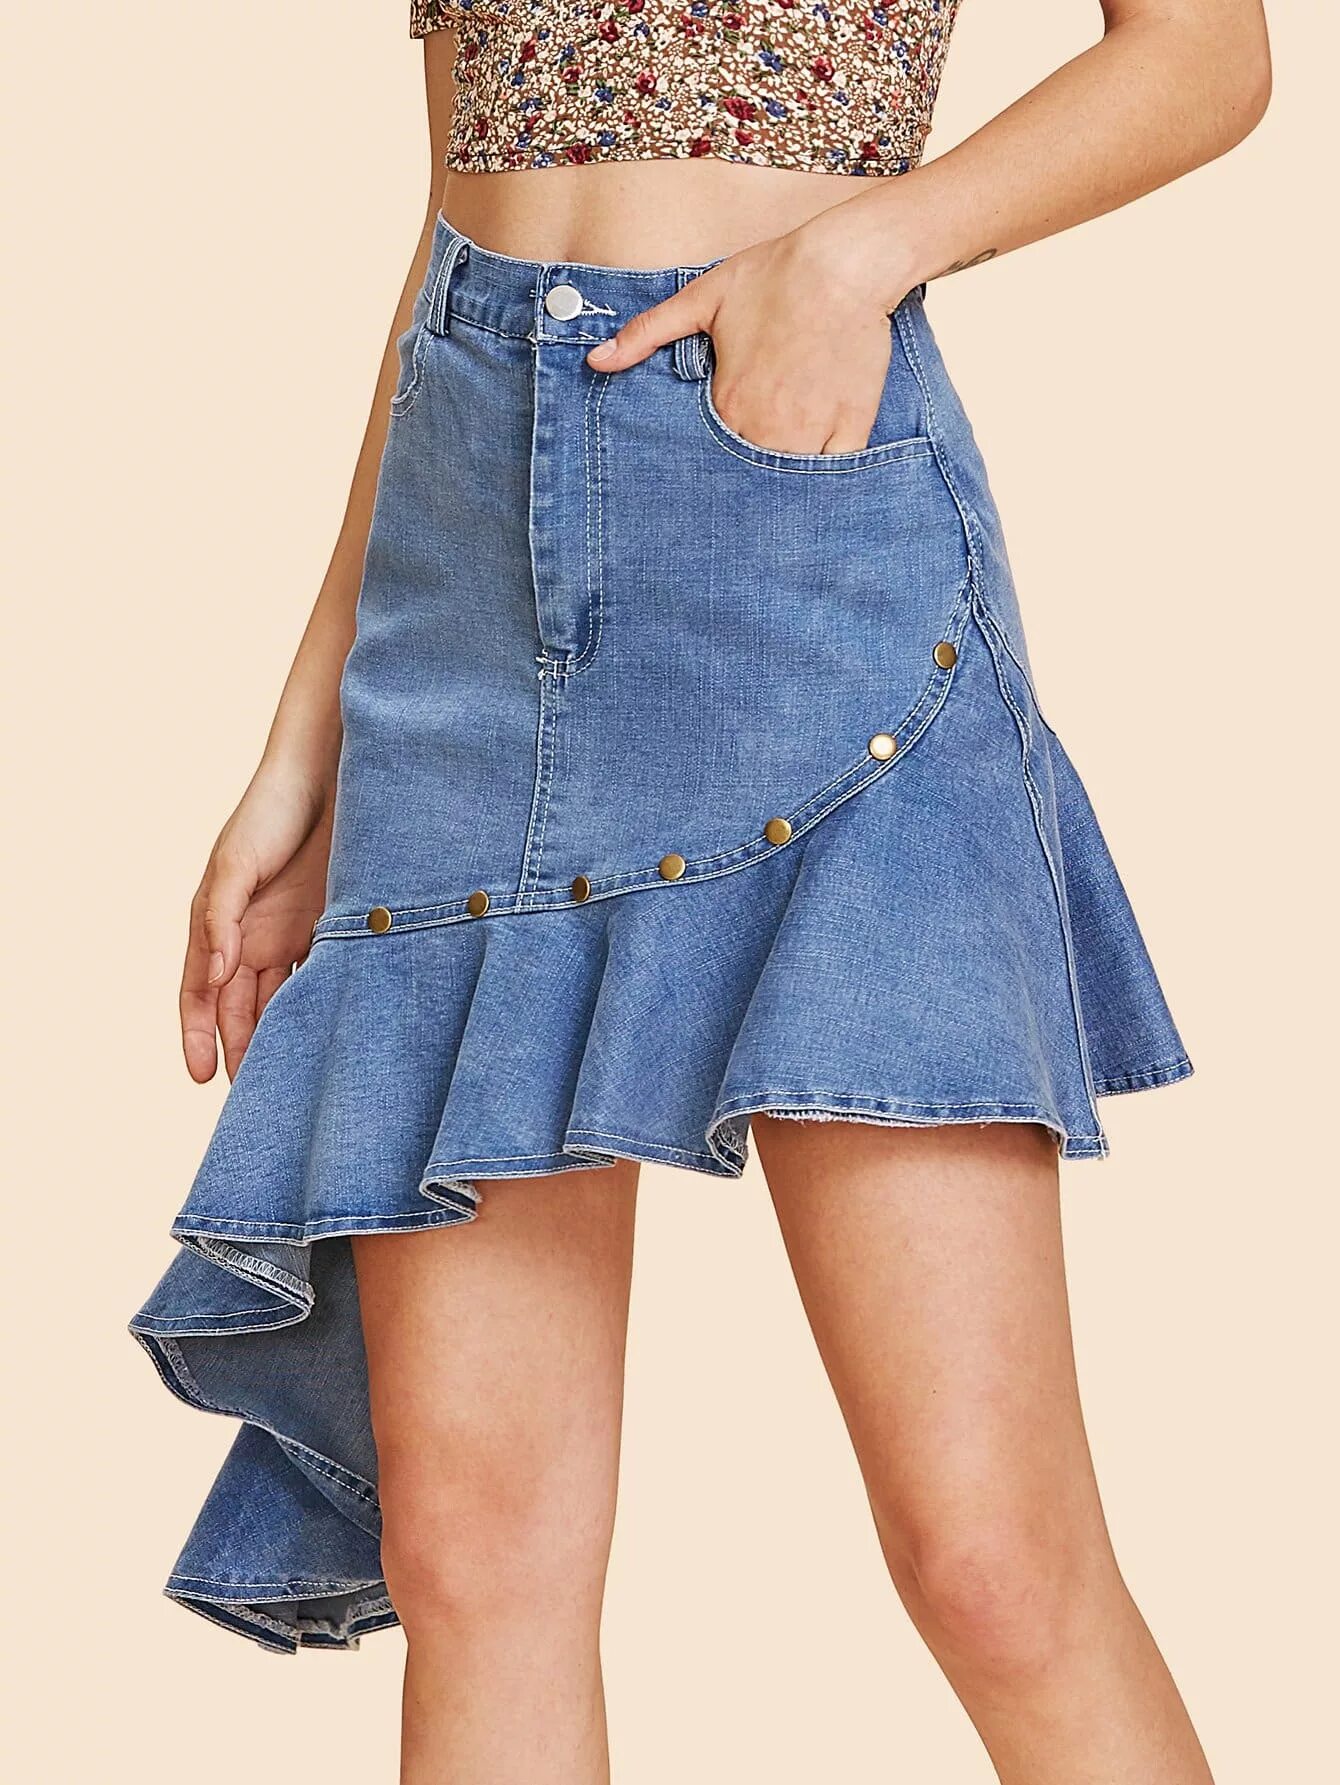 Джинсовая одежда юбка. Юбка джинсовая 2022 SHEIN. Джинсовая юбка с воланами. Юбки из джинса. Комбинированная джинсовая юбка.